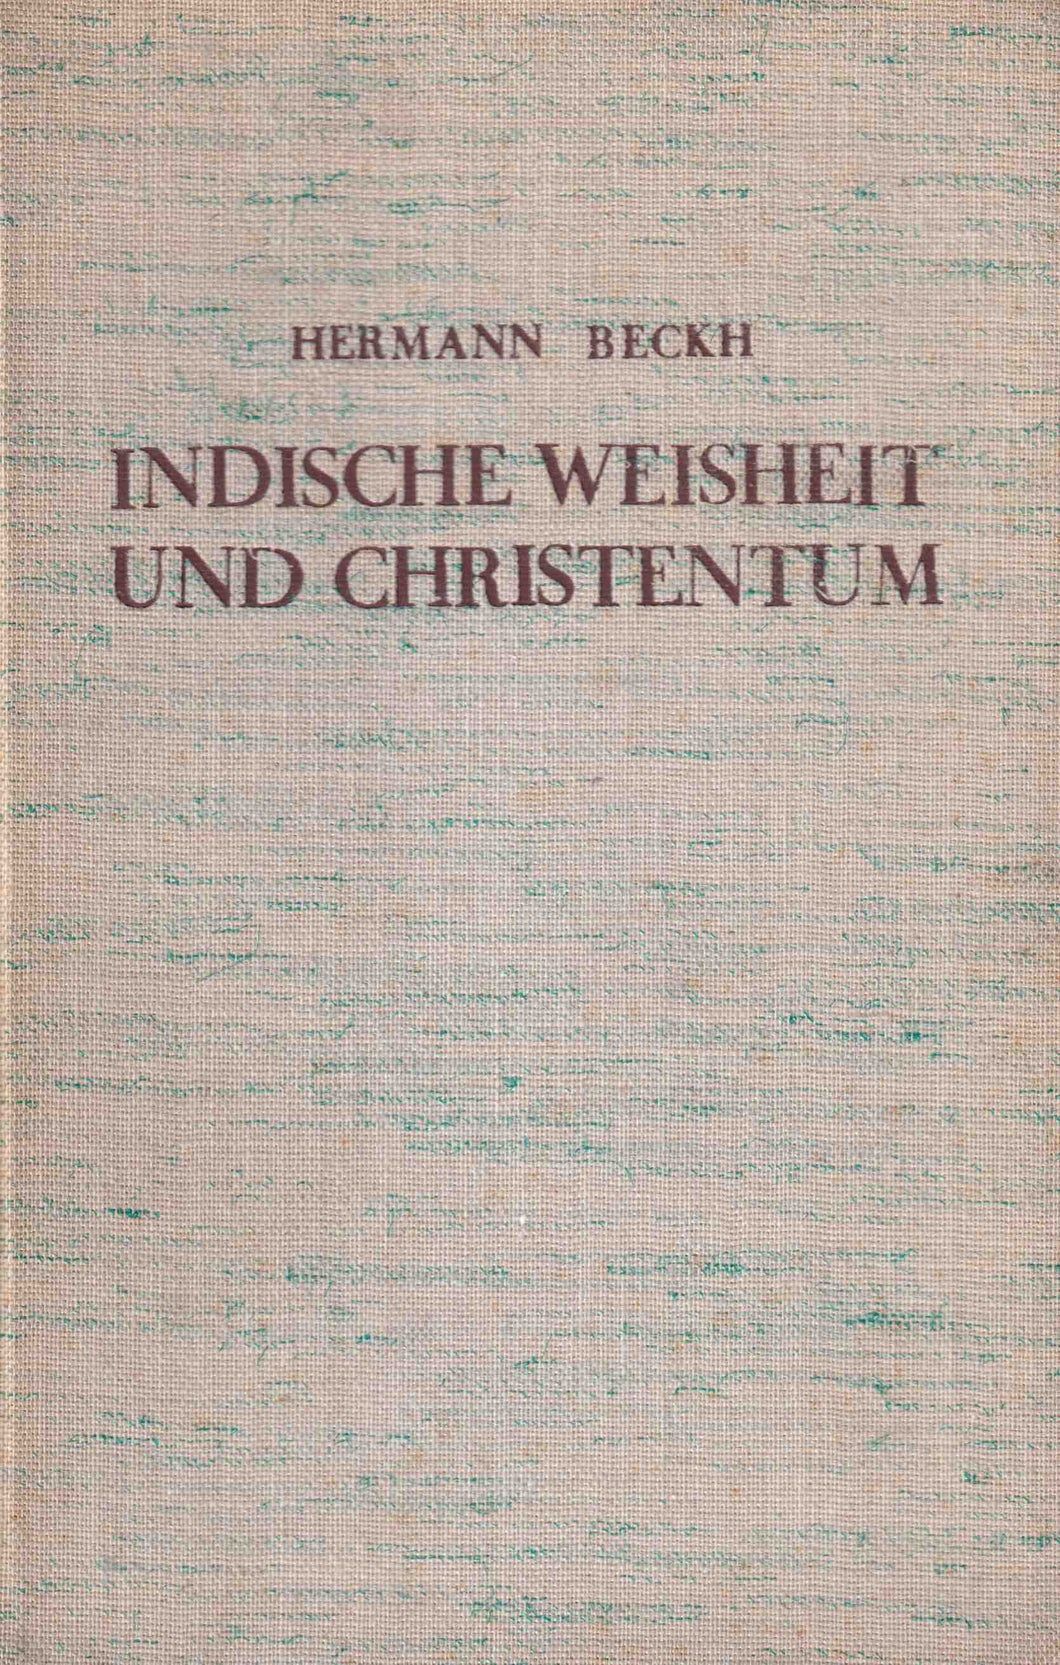 Indische Weisheit und Christentum